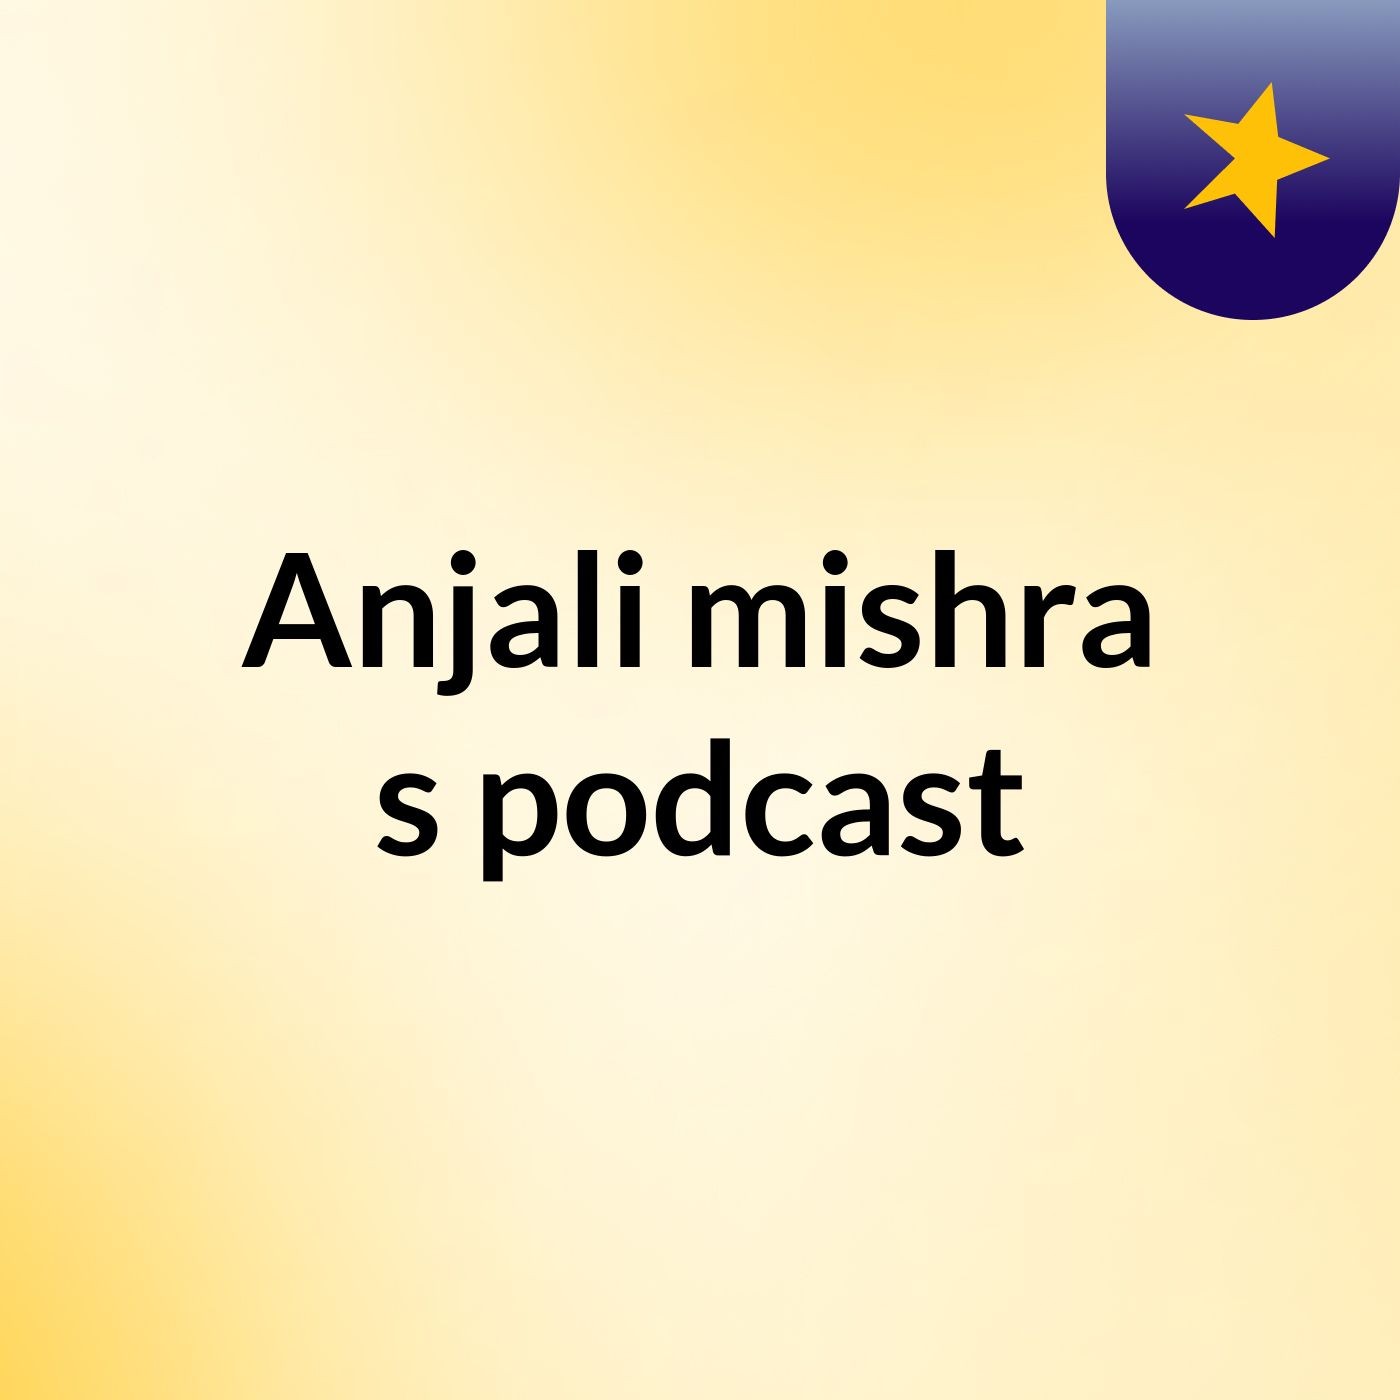 Episode 2 - Anjali mishra's podcast